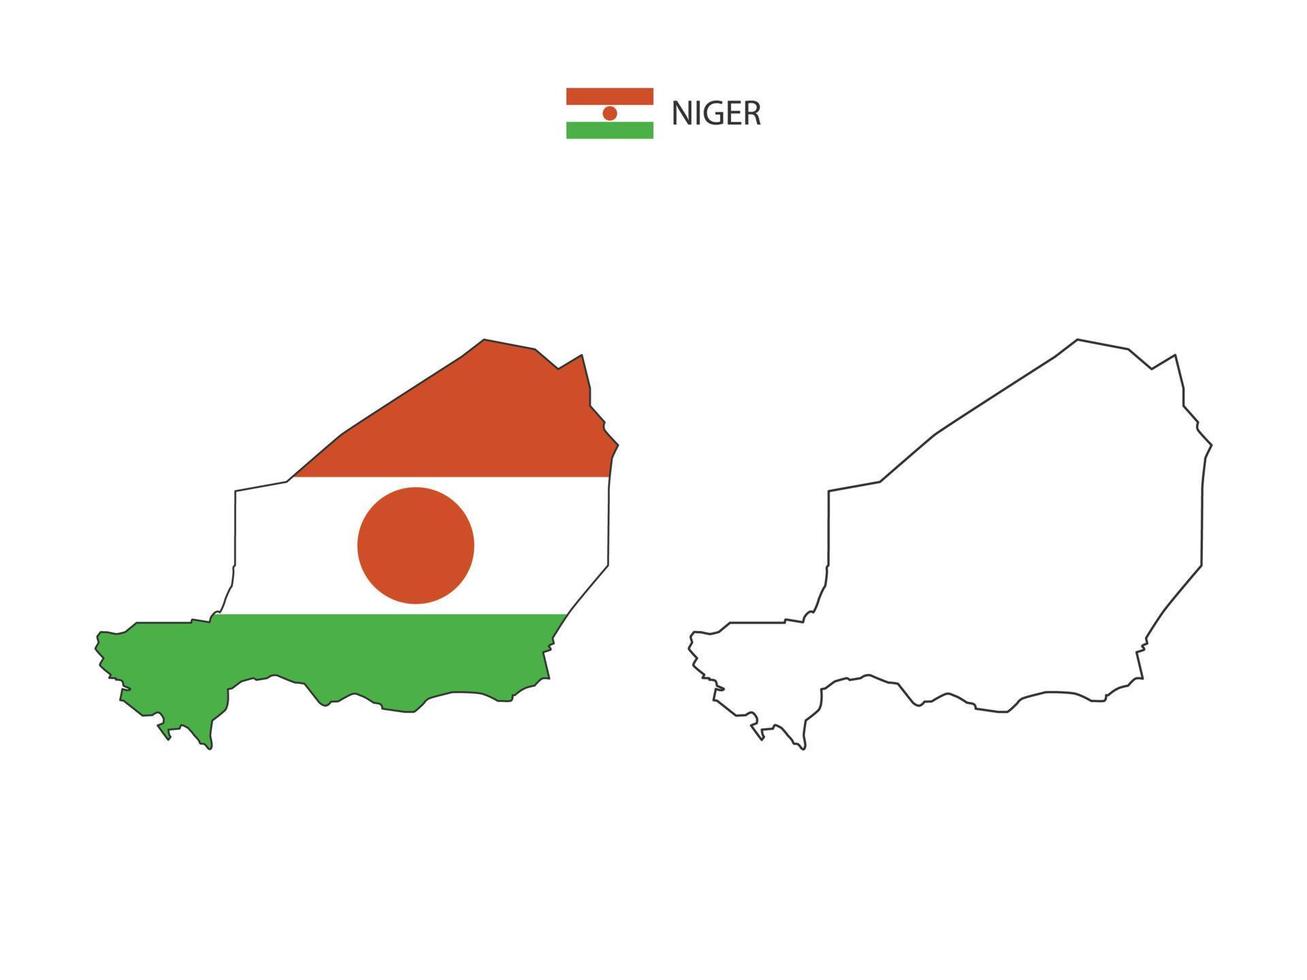 Niger kaart stad vector verdeeld door schets eenvoud stijl. hebben 2 versies, zwart dun lijn versie en kleur van land vlag versie. beide kaart waren Aan de wit achtergrond.